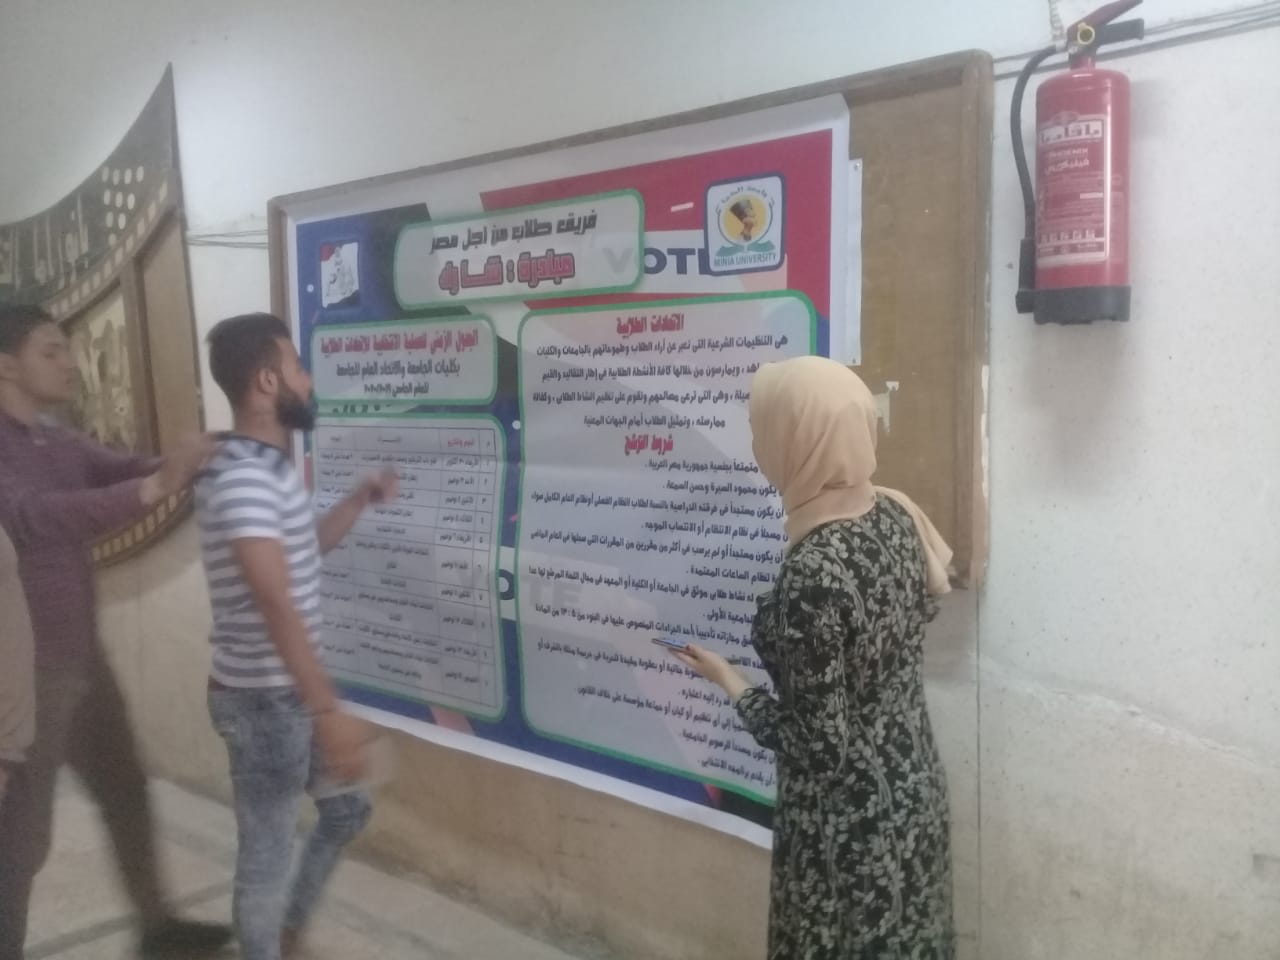 فريق طلاب من أجل مصر بجامعة المنيا يطلق مبادرة شارك للتعريف بالاتحادات الطلابية (2)